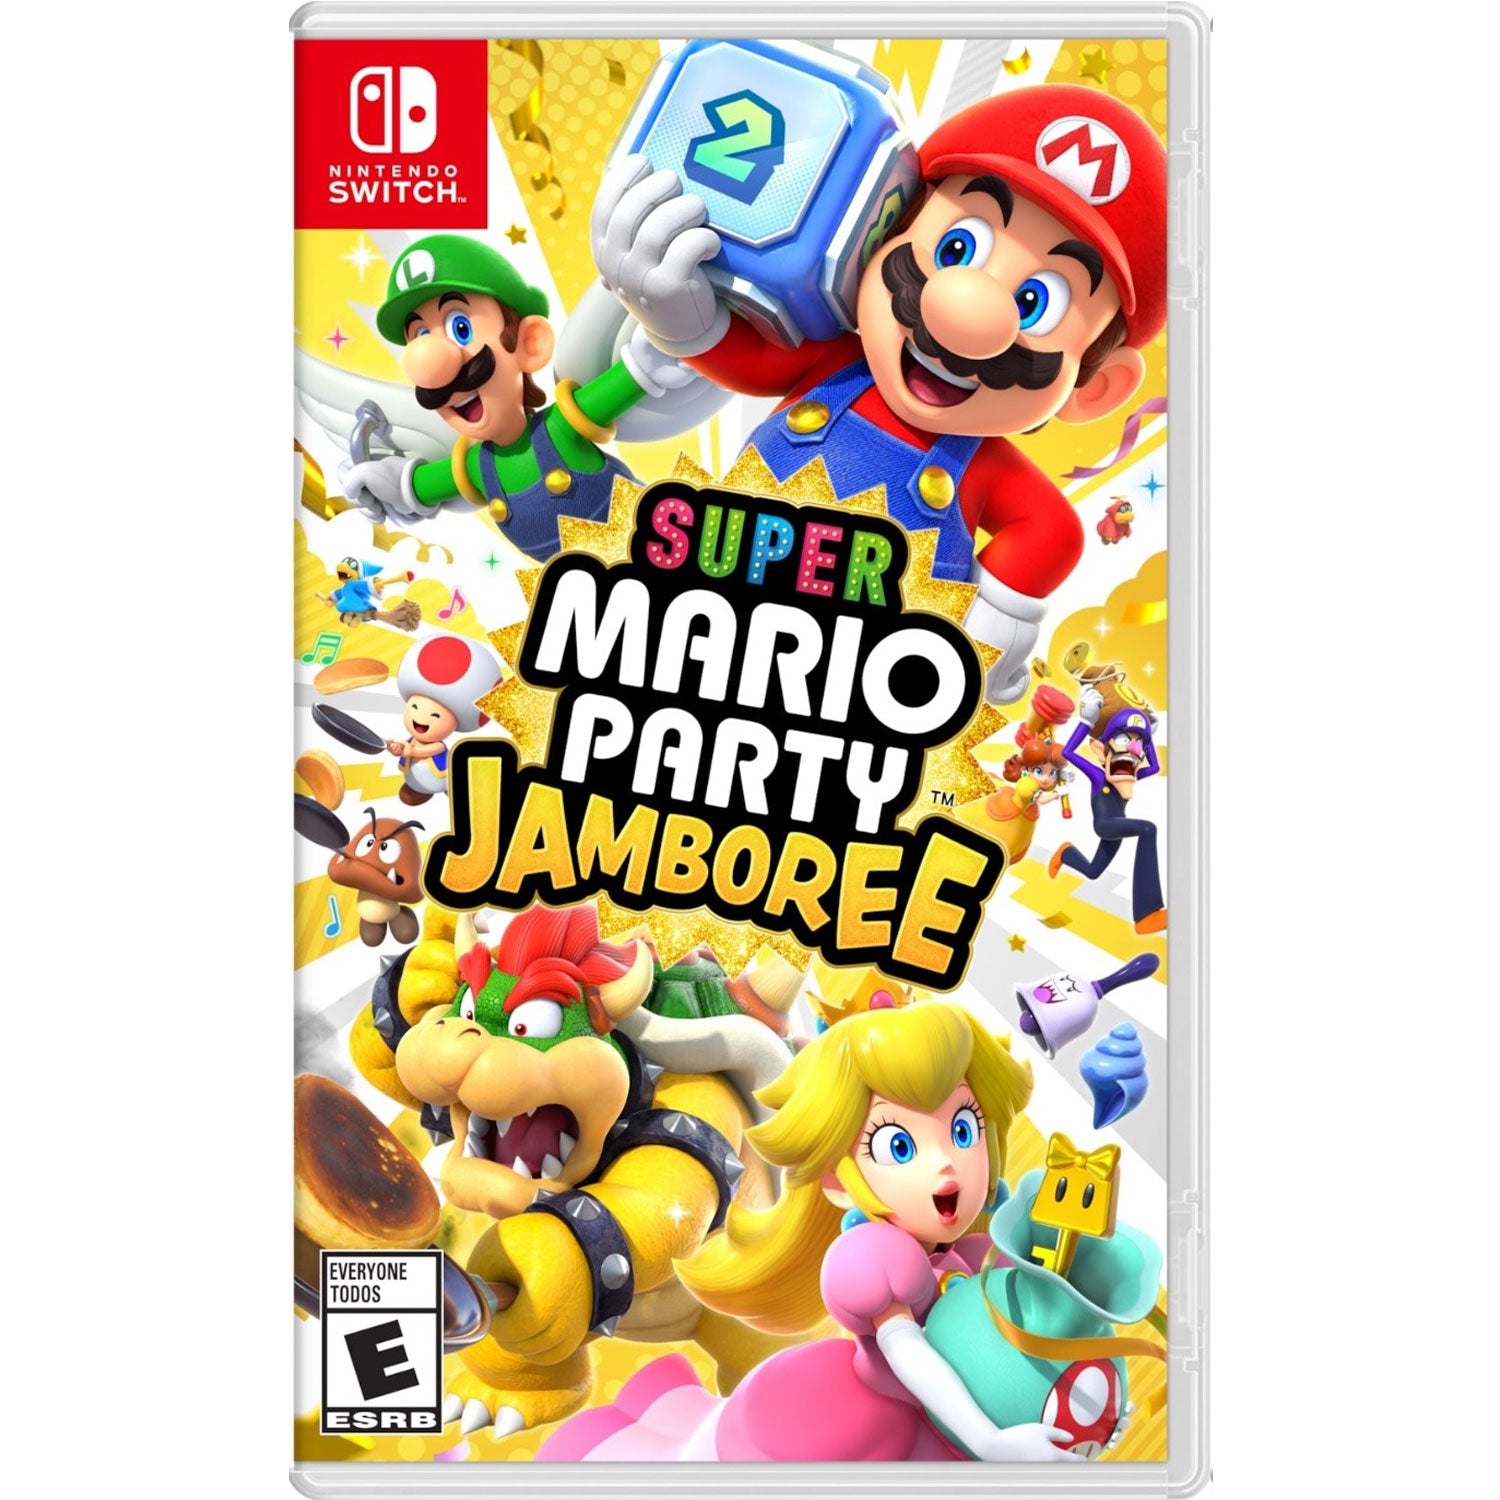 Nintendo Switch Super Mario Party Jambore